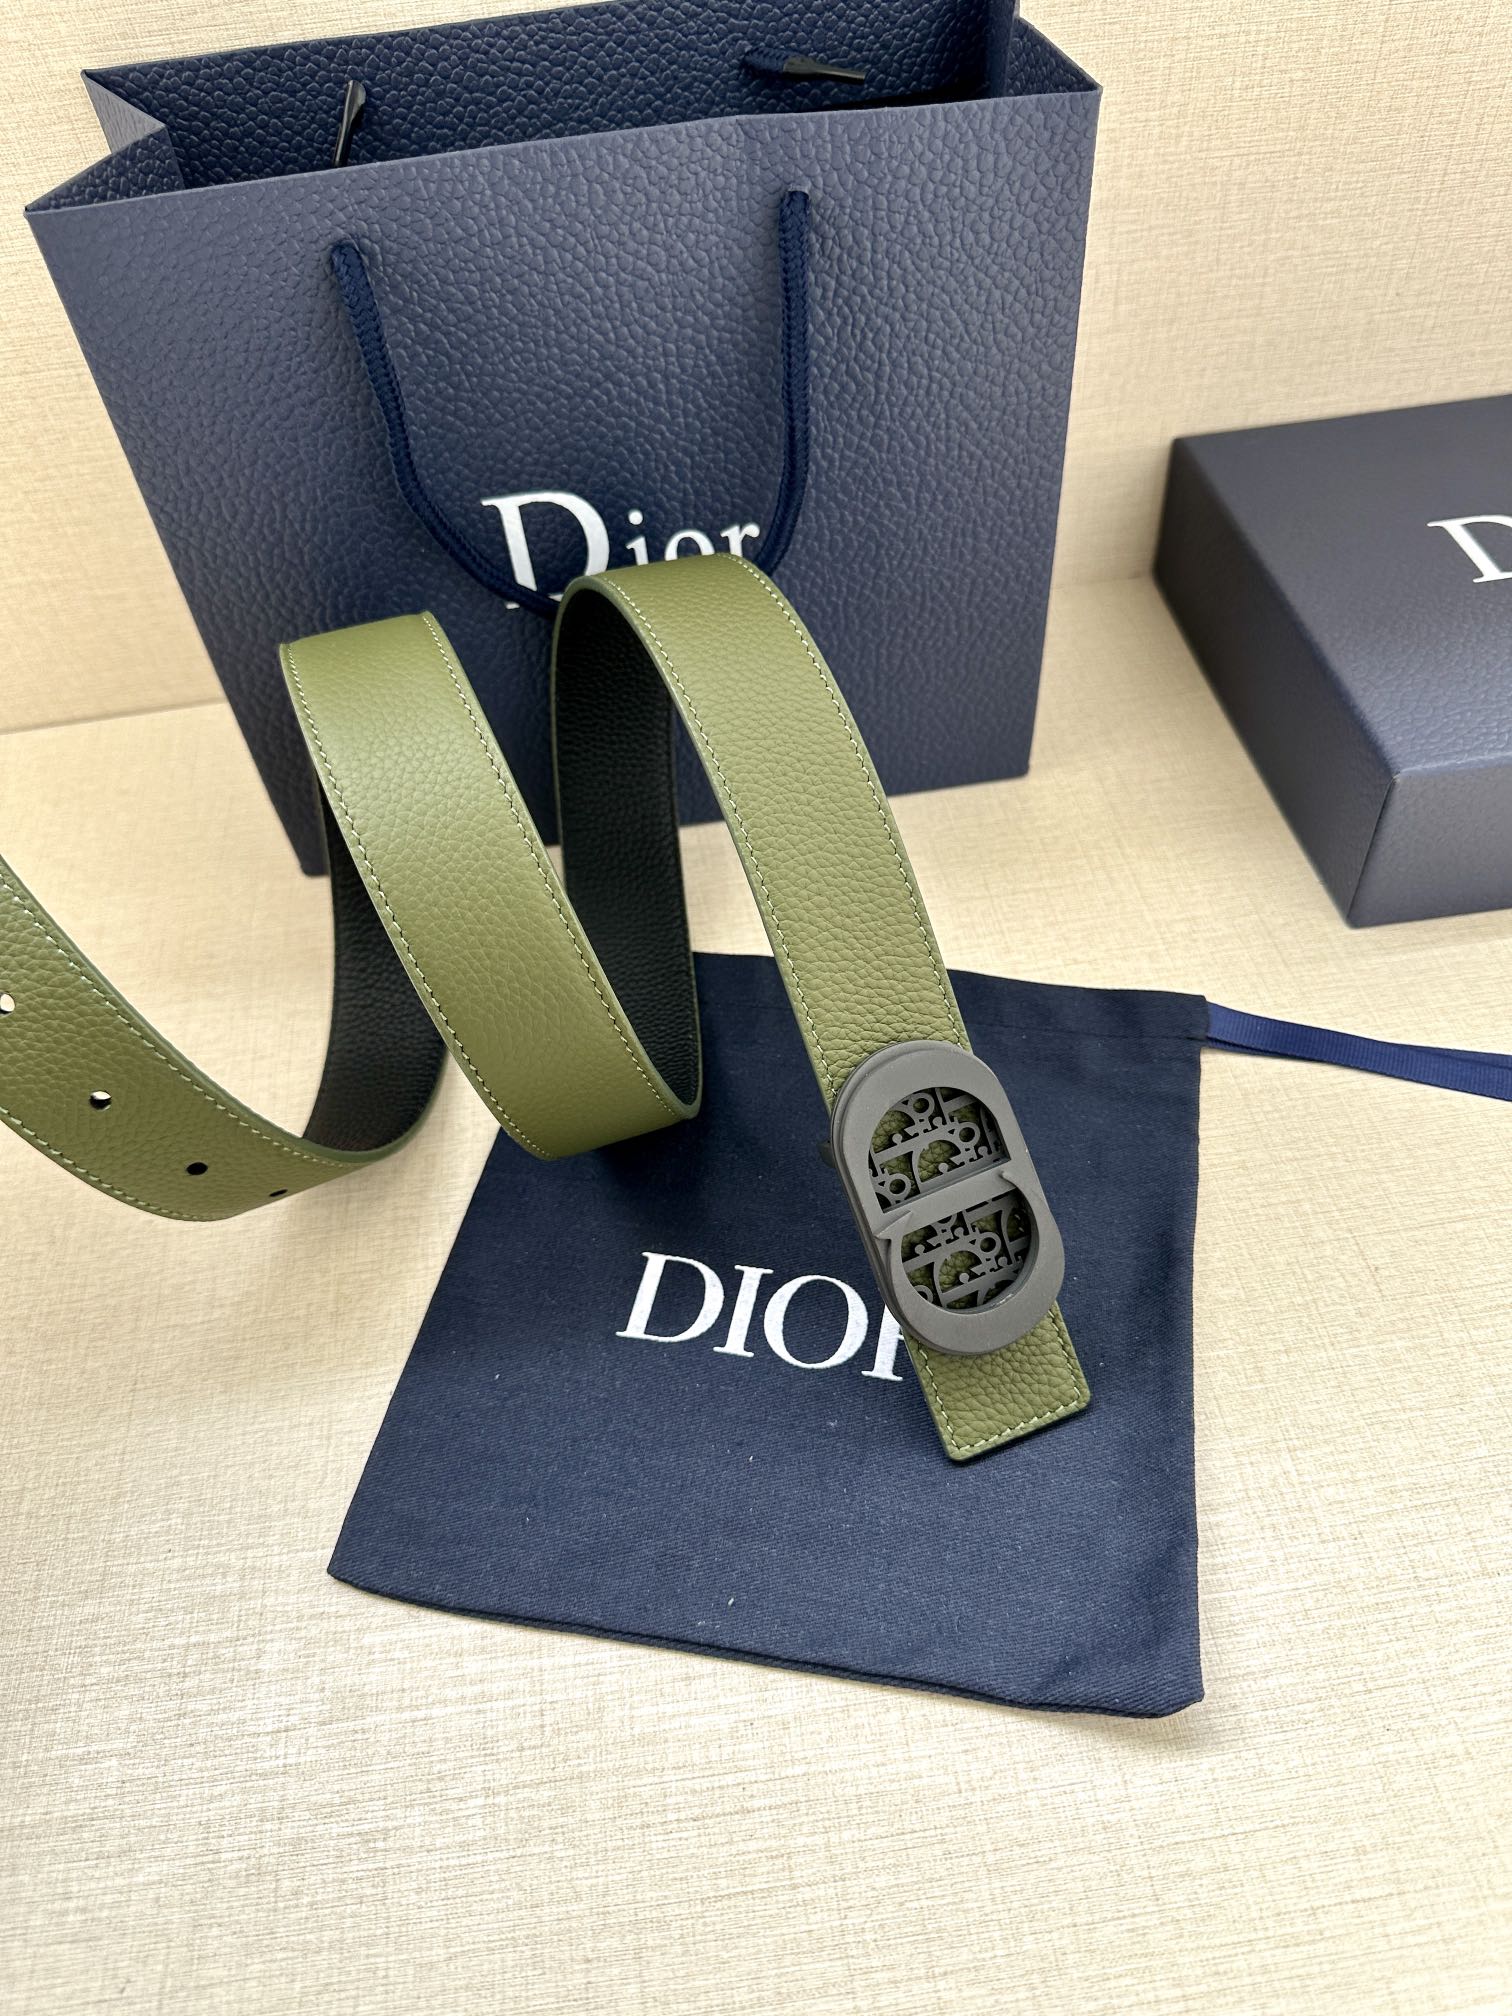 宽度3.5cm这款白/金色饰面黄铜腰带扣采用“CD”标志点缀镌刻有DiorOblique图案经典元素呈现